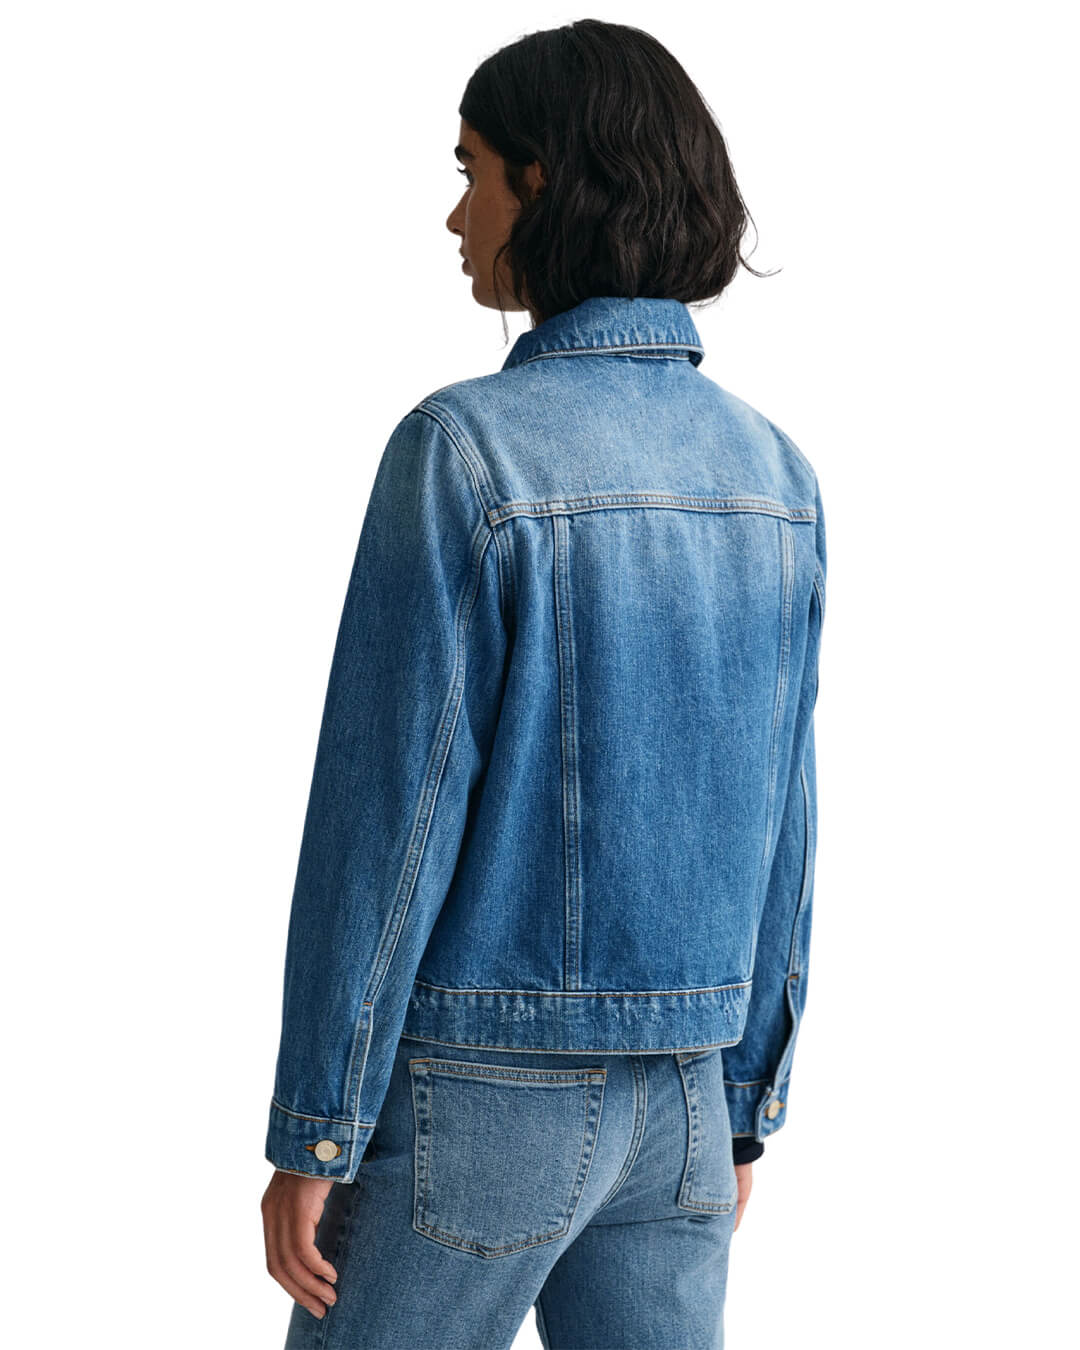 Gant Outerwear Gant Blue Denim Jacket